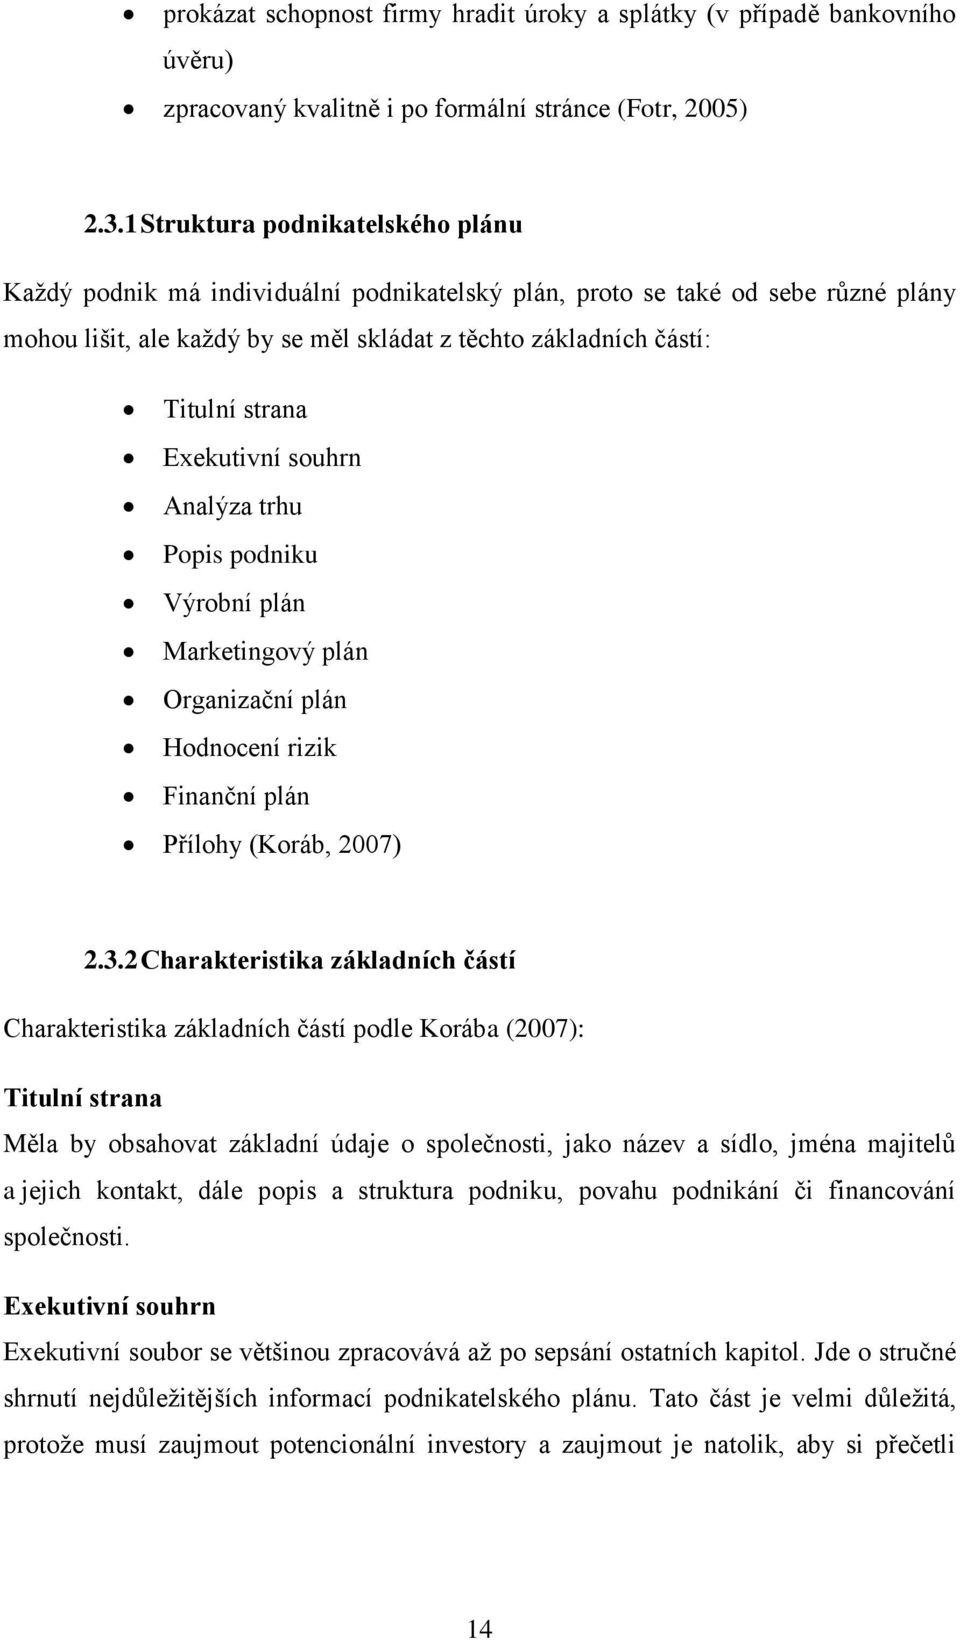 Exekutivní souhrn Analýza trhu Popis podniku Výrobní plán Marketingový plán Organizační plán Hodnocení rizik Finanční plán Přílohy (Koráb, 2007) 2.3.